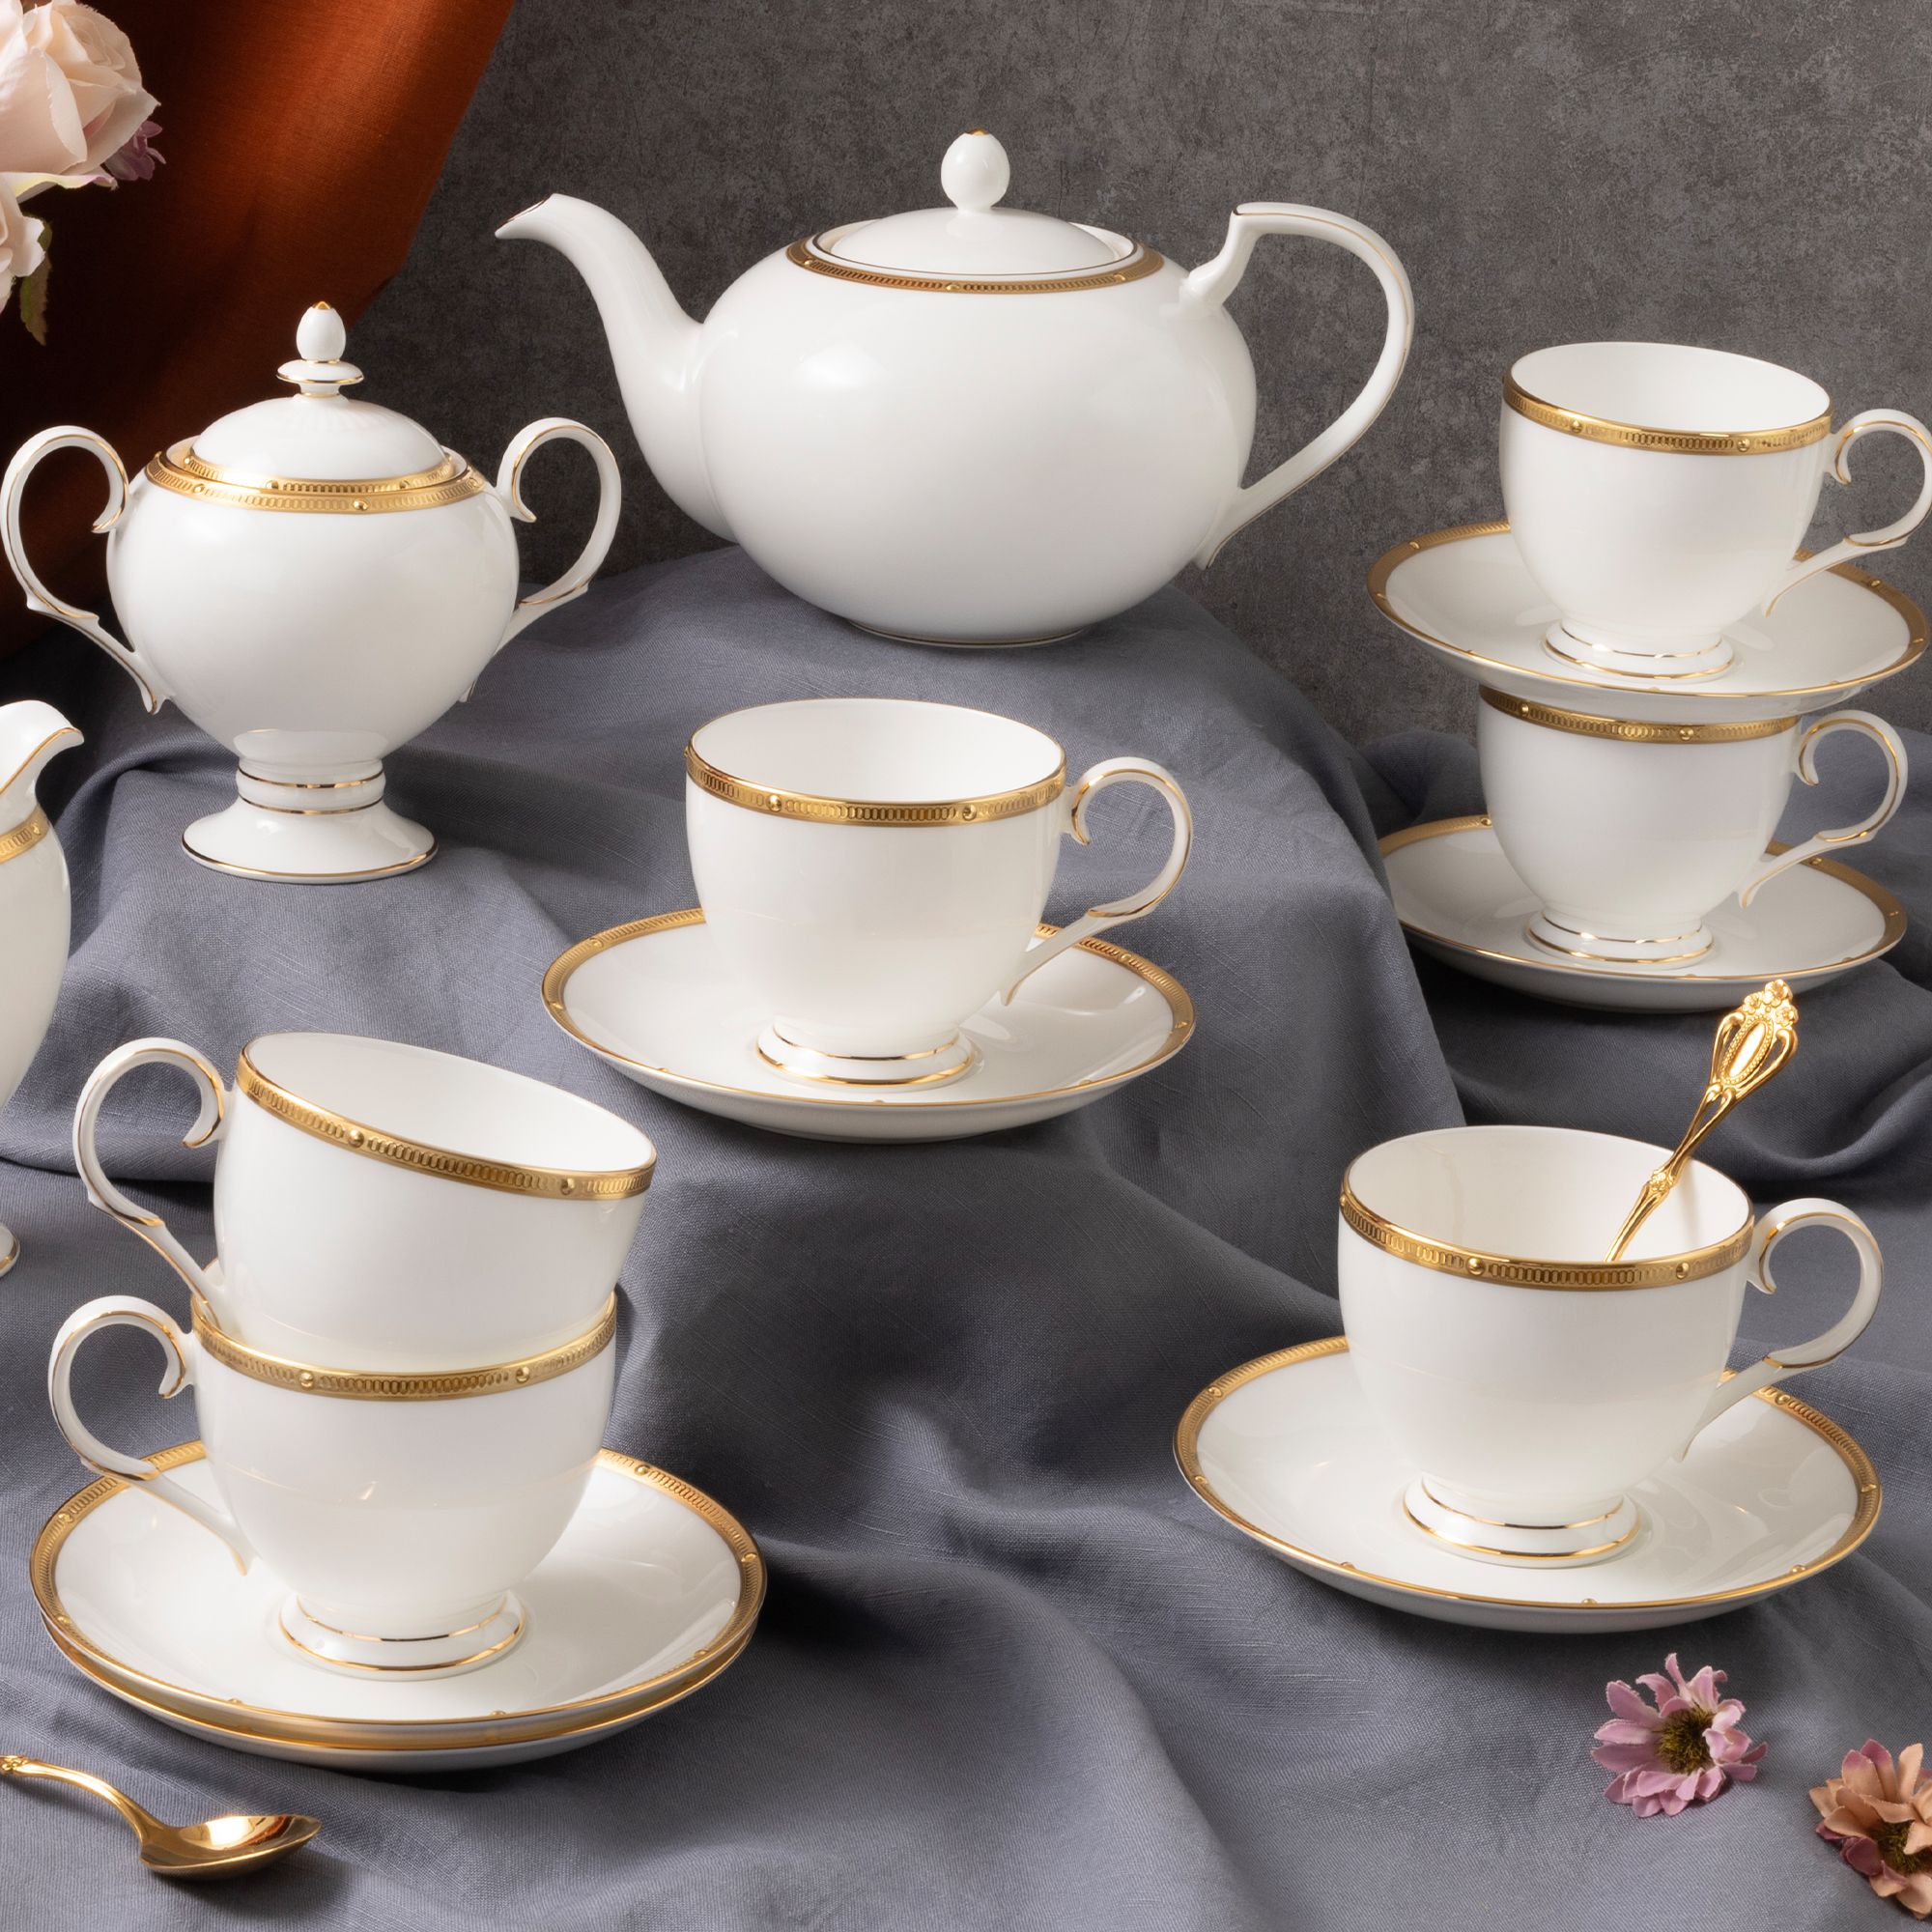  Bộ ấm chén uống trà 15 món sứ xương cao cấp viền vàng | Rochelle Gold 4796L-T017A 